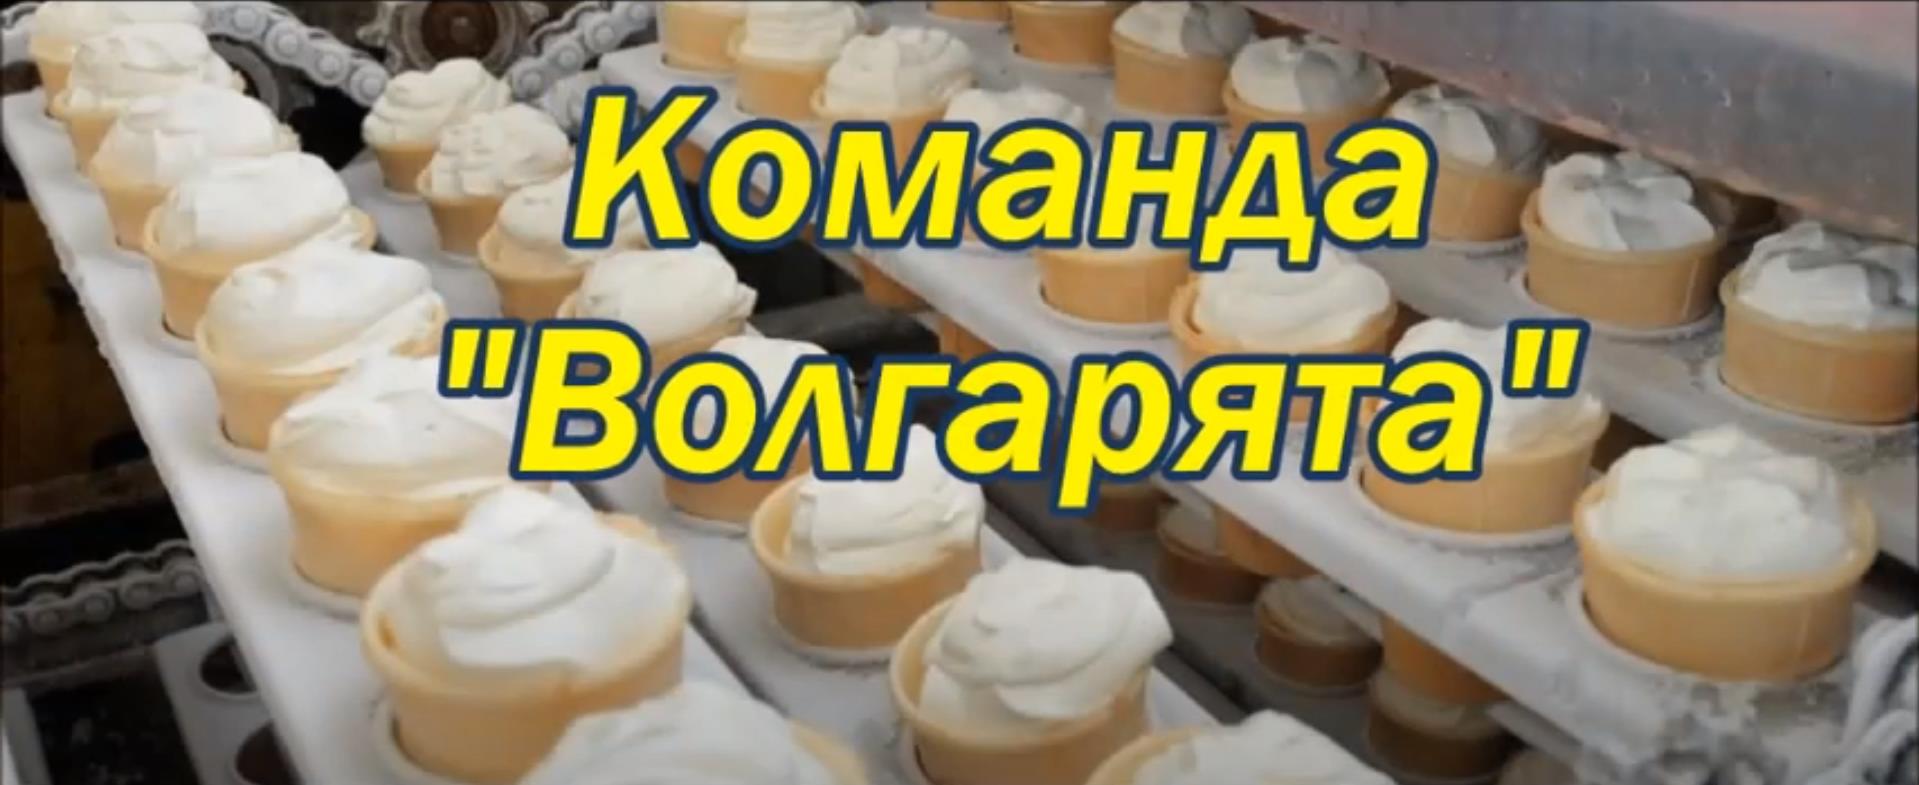 Ульяновская область. Команда «Волгарята». Проект «Фабрика мороженого»